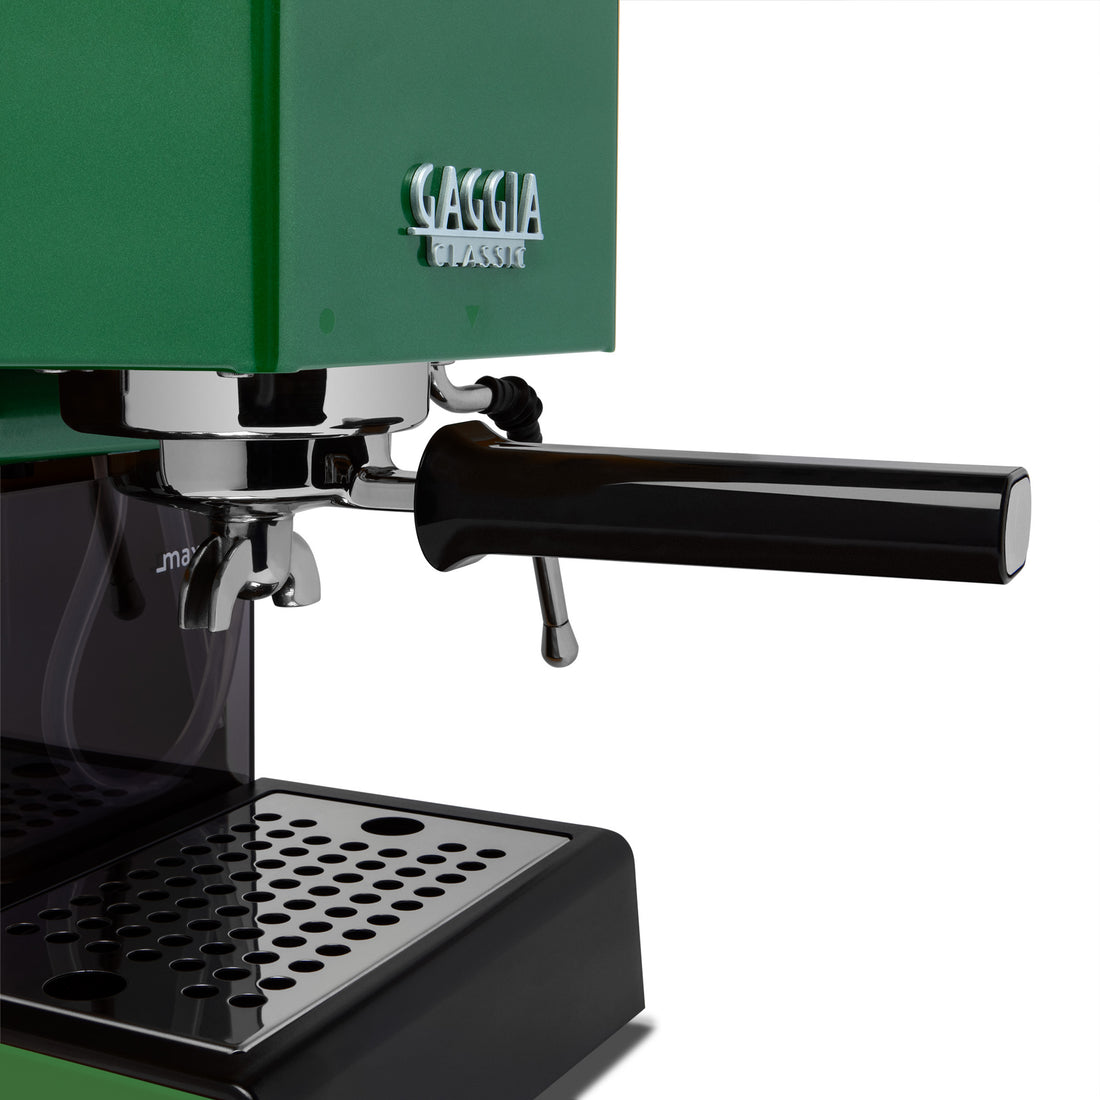 Gaggia Classic Evo Pro Espresso Machine in Jungle Green